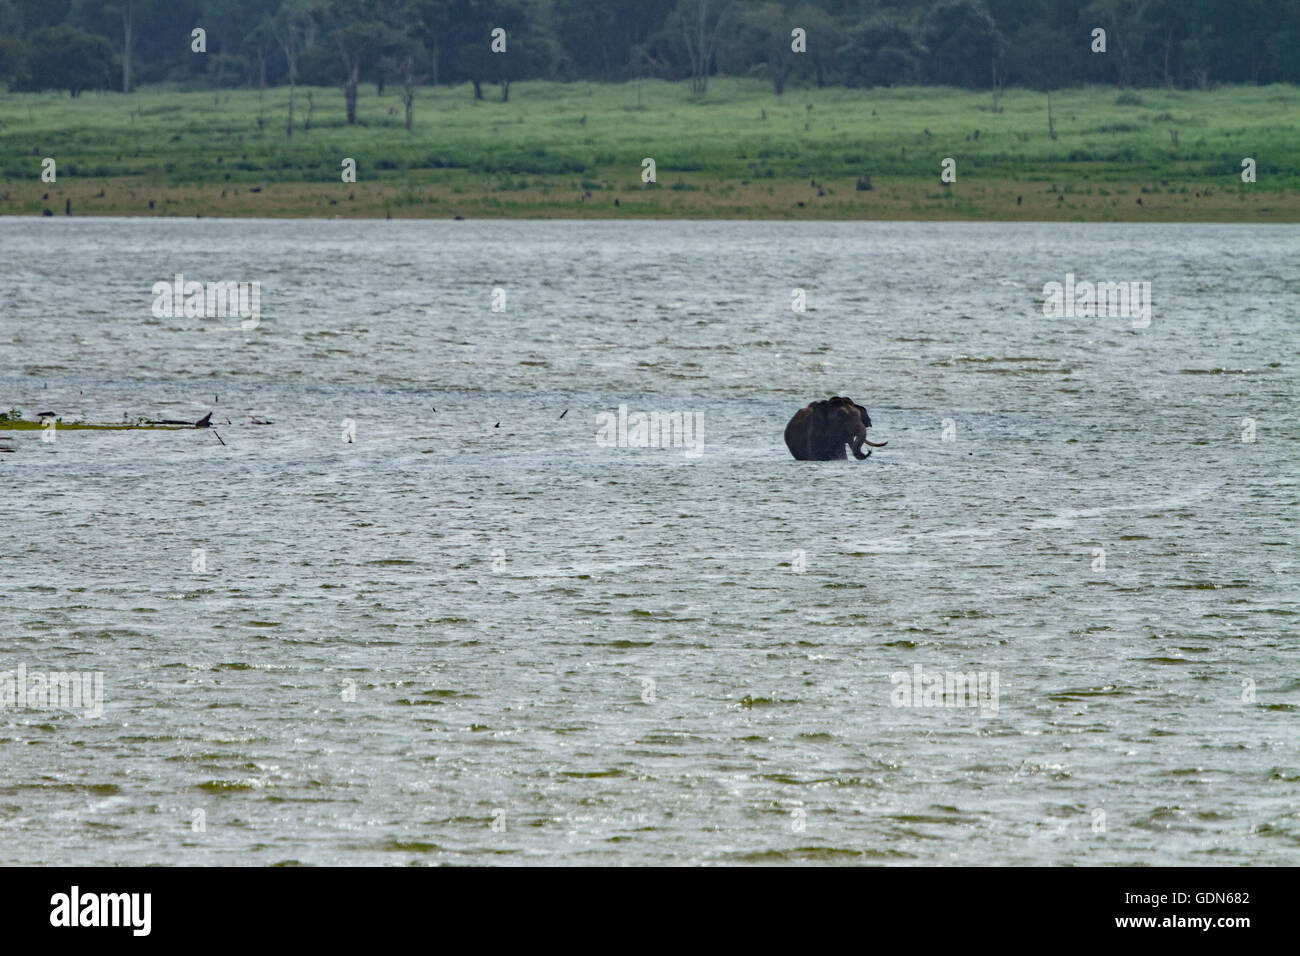 Wild Elephant bathing in lake of Kabini national park, India. Stock Photo